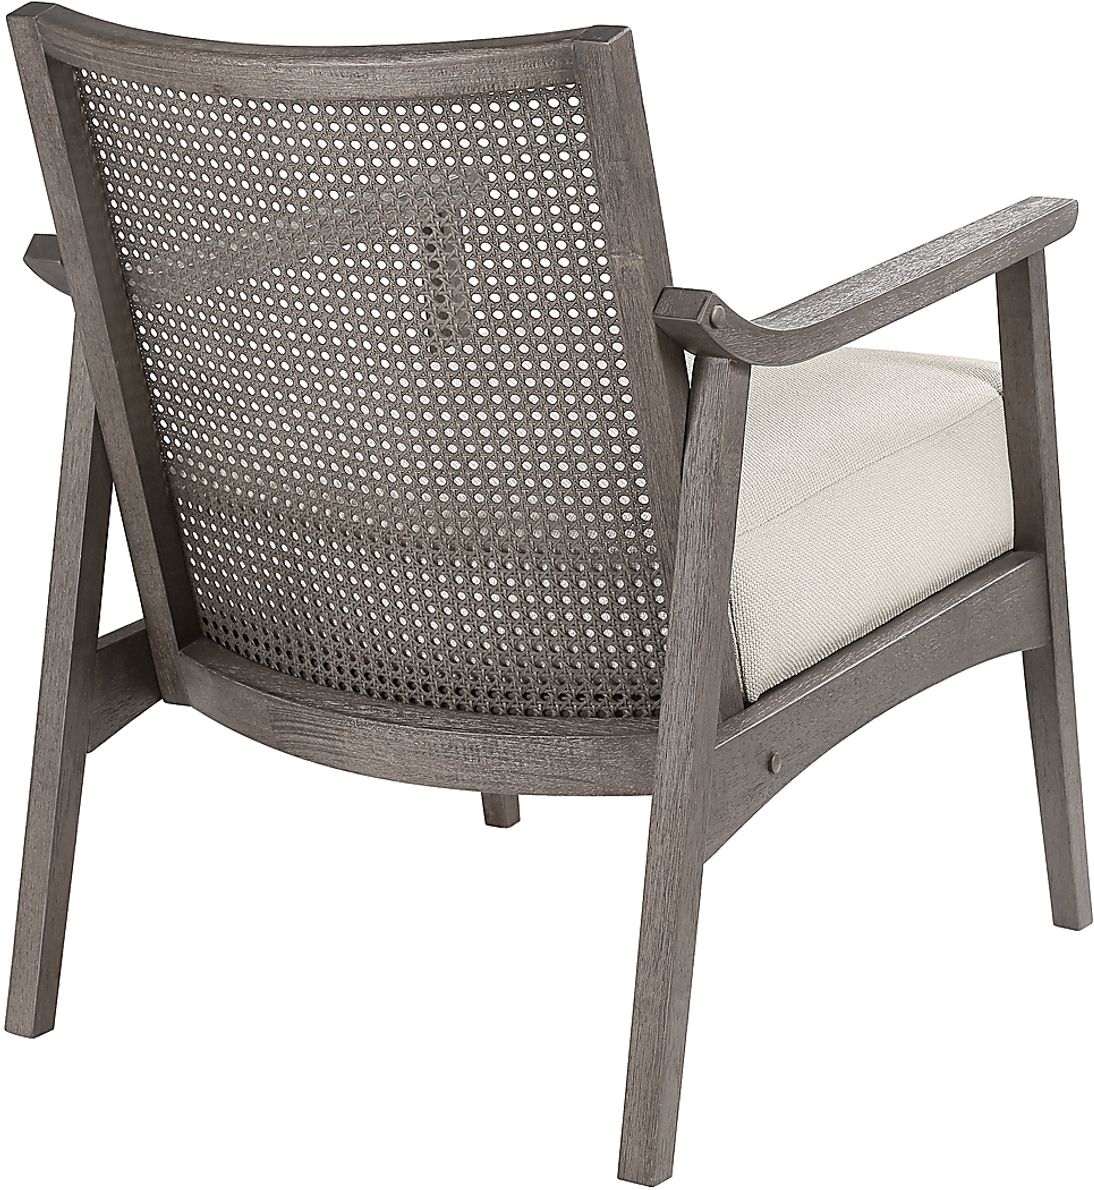 Alanios Accent Chair